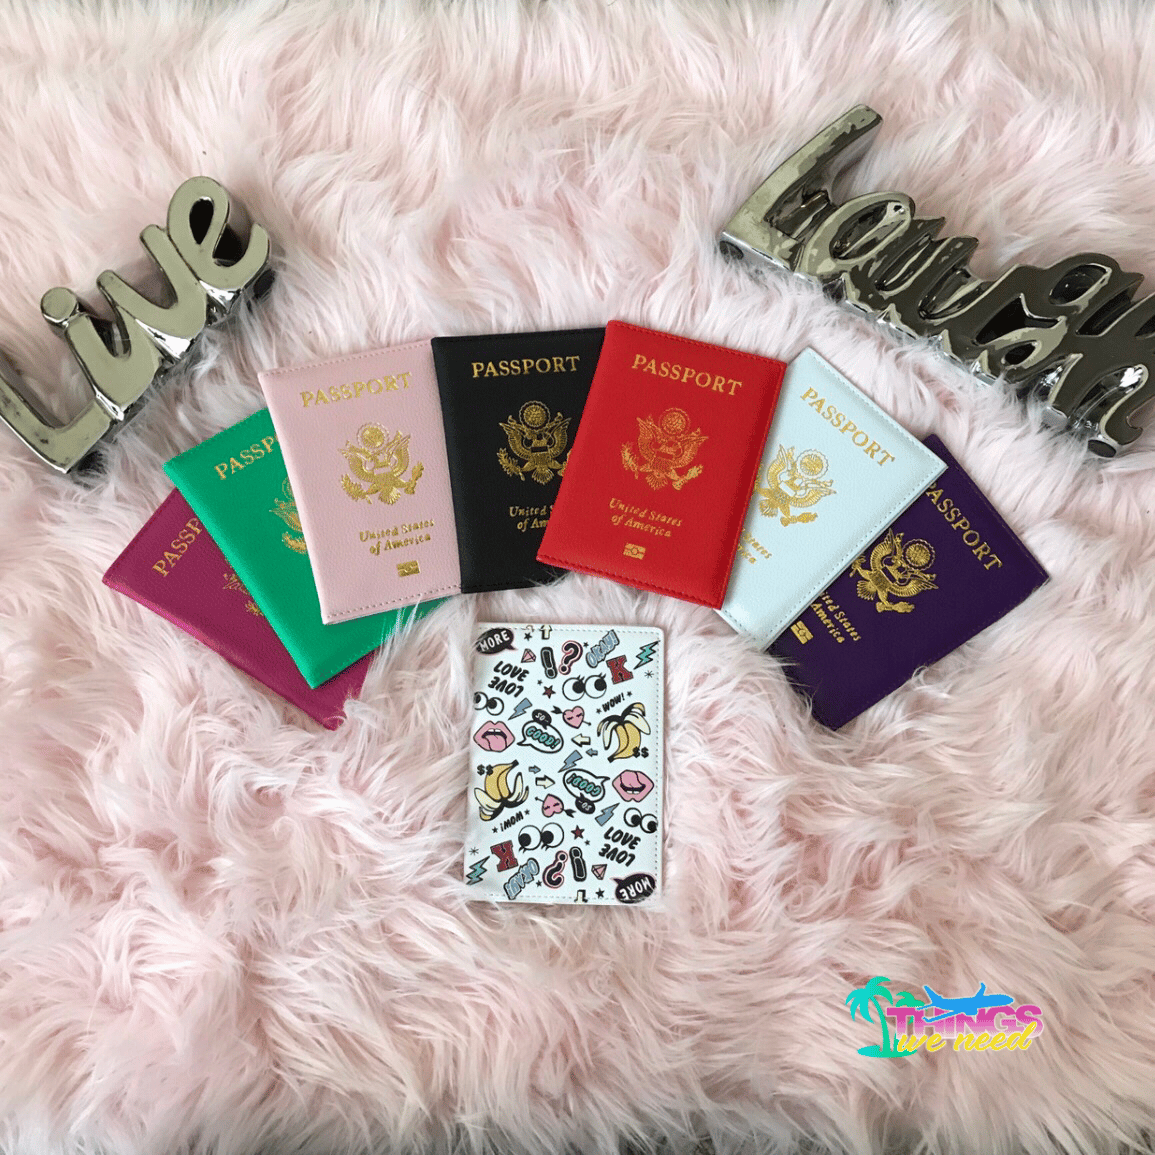 Feminine Passport Cover, Tulips Passport Cover Fits US Passports, Checkbook Cover